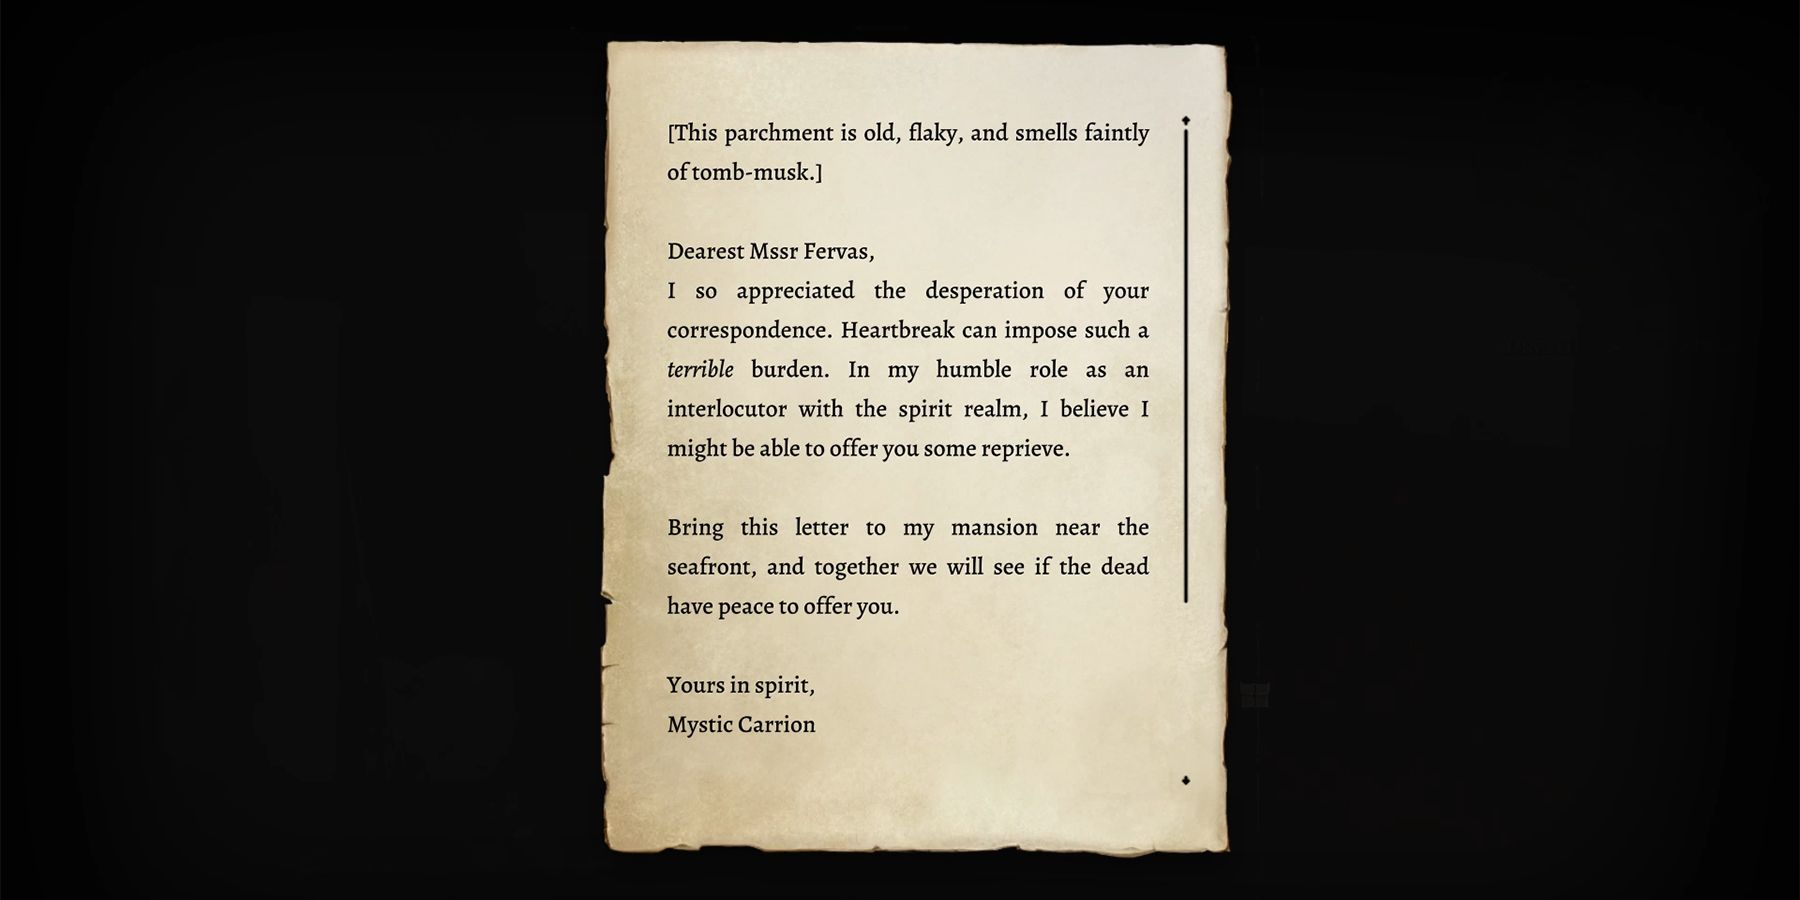 mystic carrion letter to oskar in baldurs gate 3